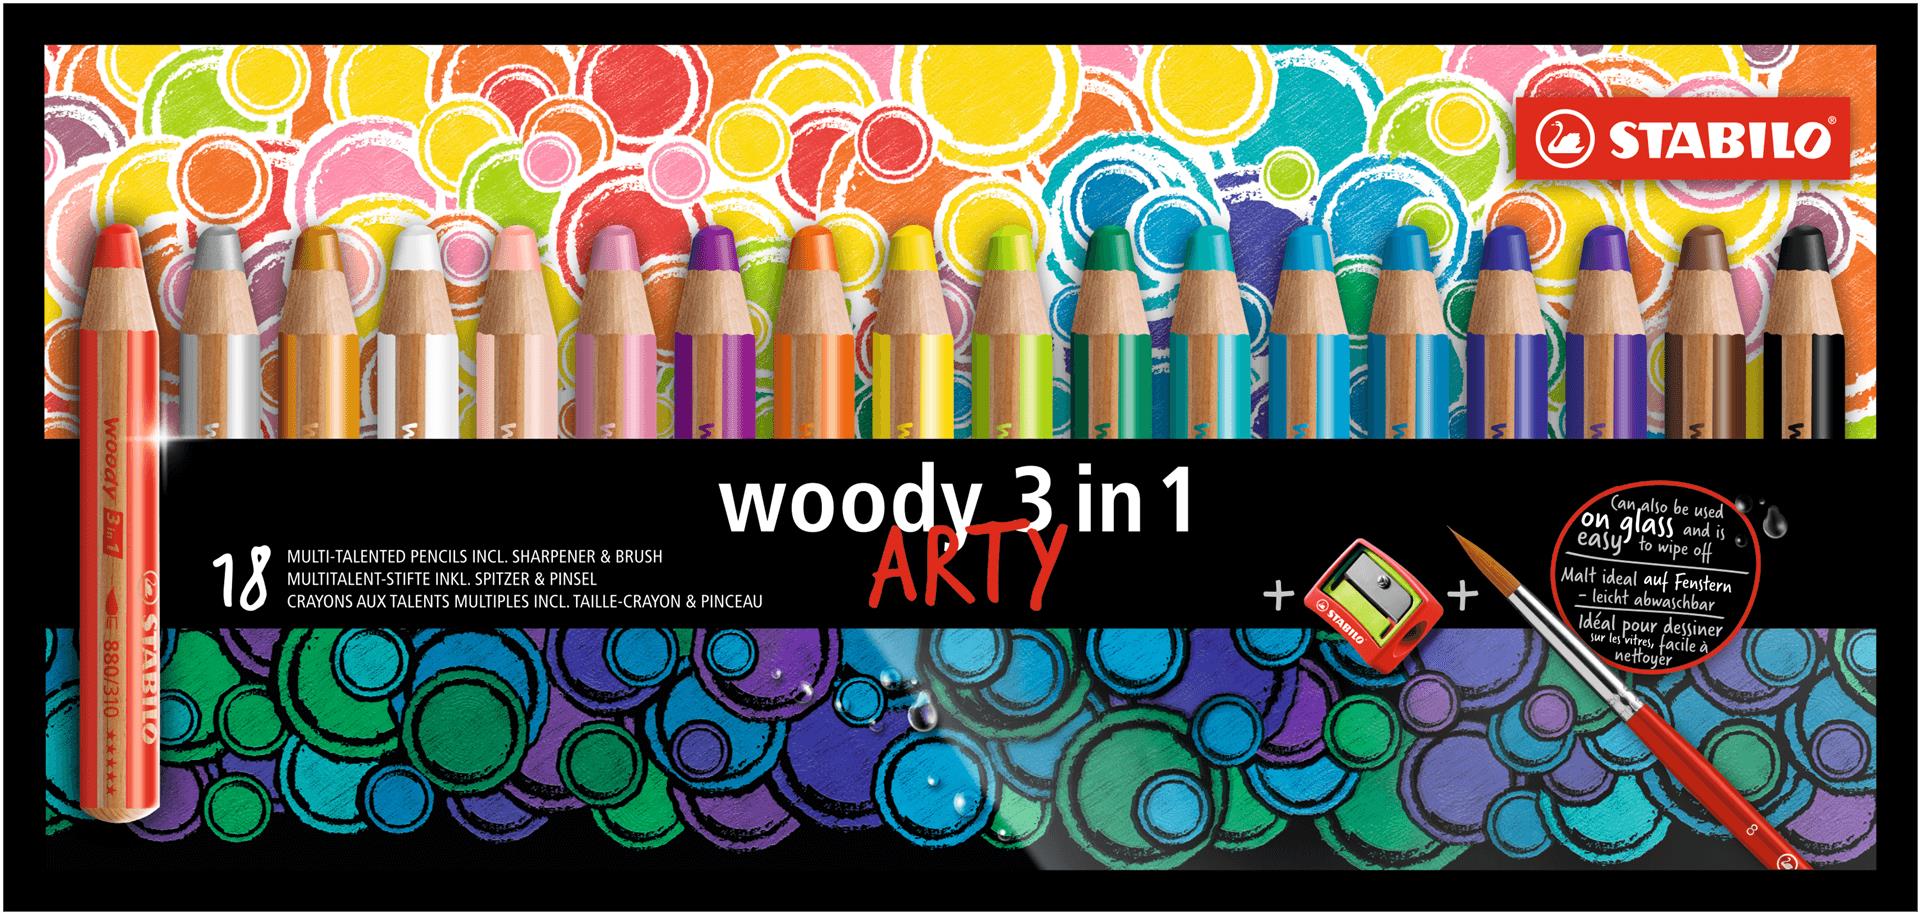 Matita colorata Multi-Funzione - STABILO woody 3 in 1 